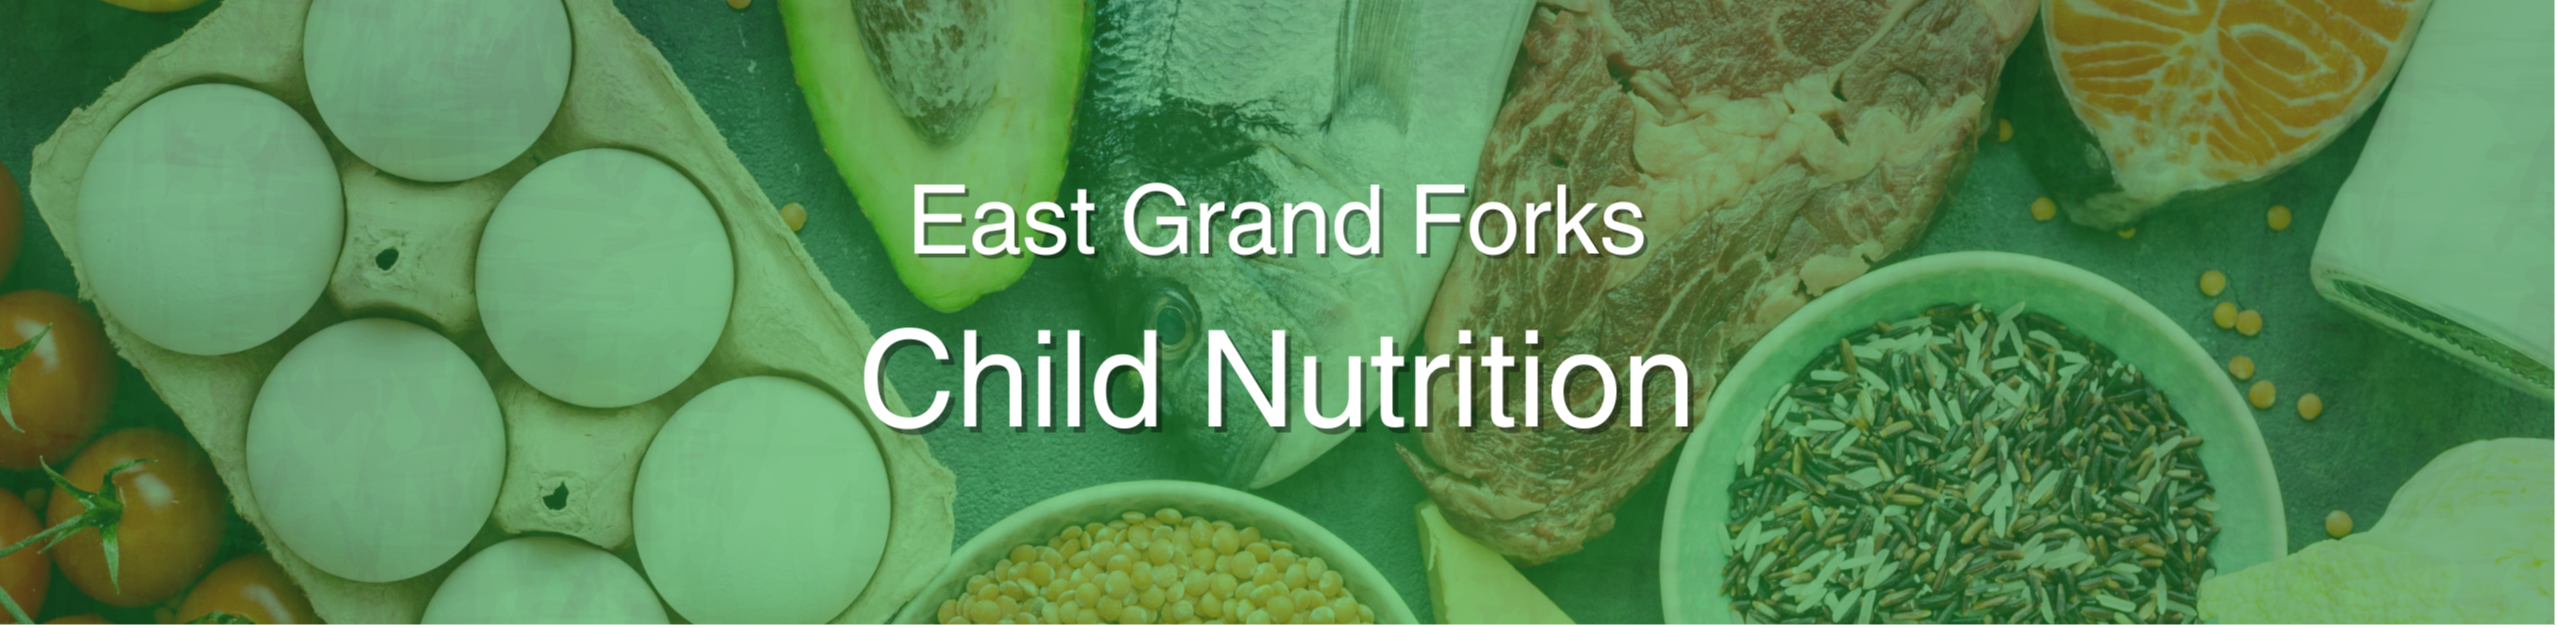 East Grand Forks Food Service